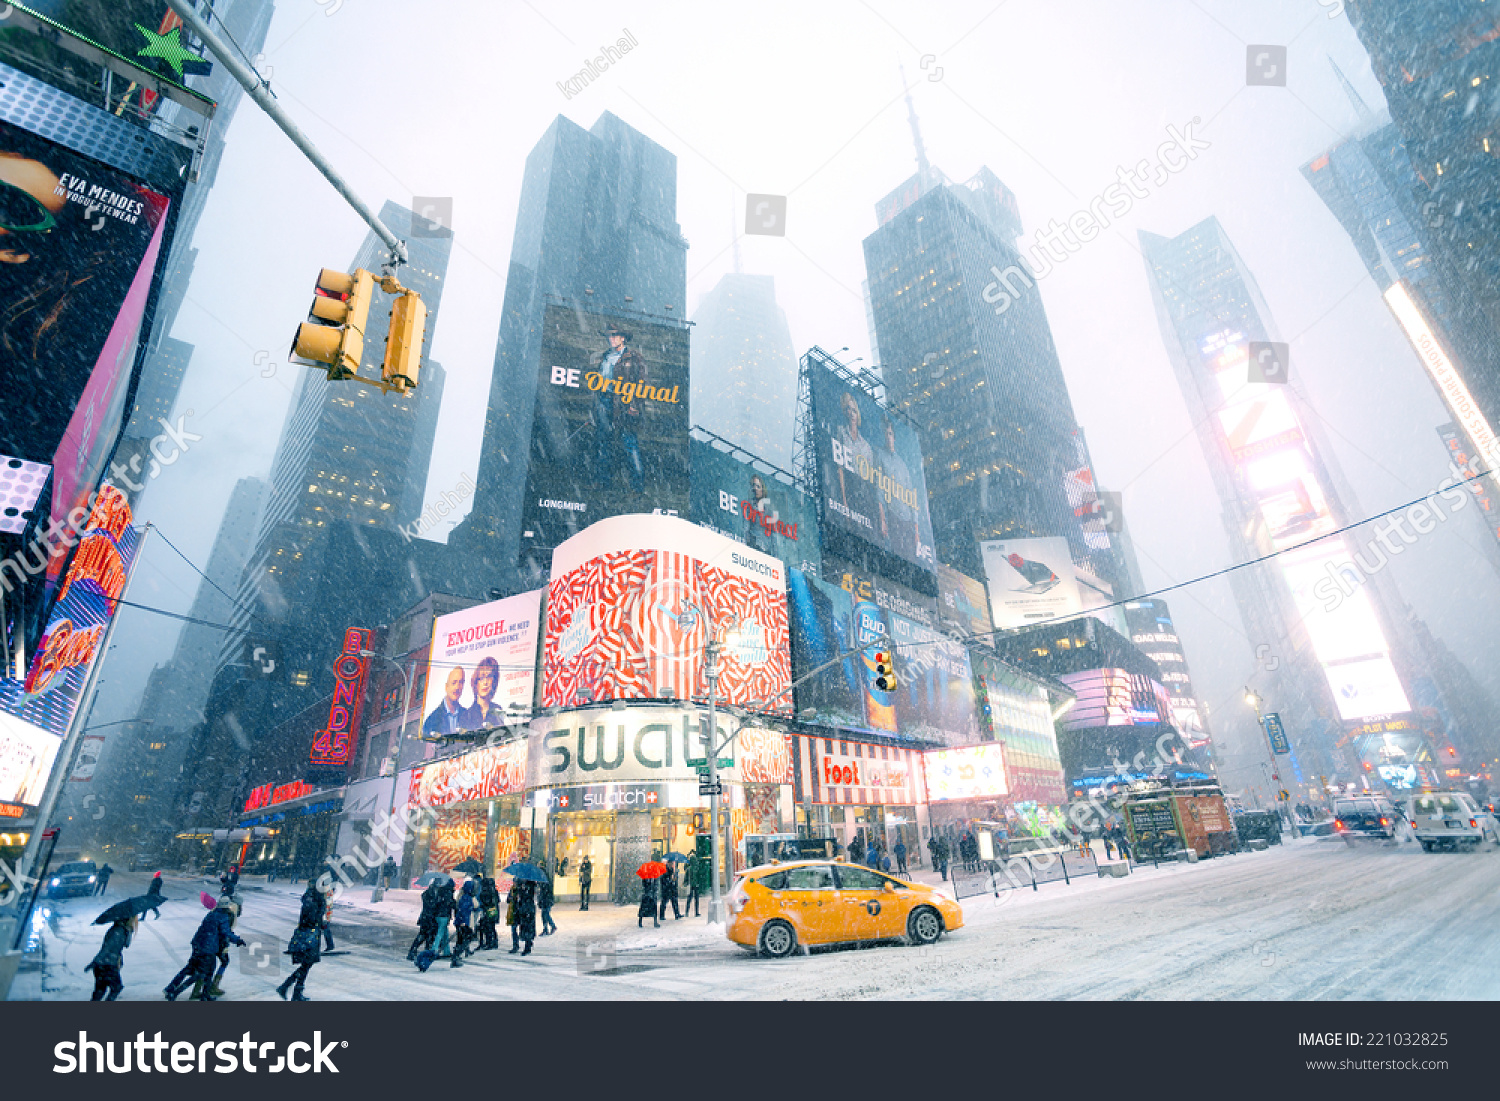 20,270 New york weather Images, Stock Photos & Vectors Shutterstock